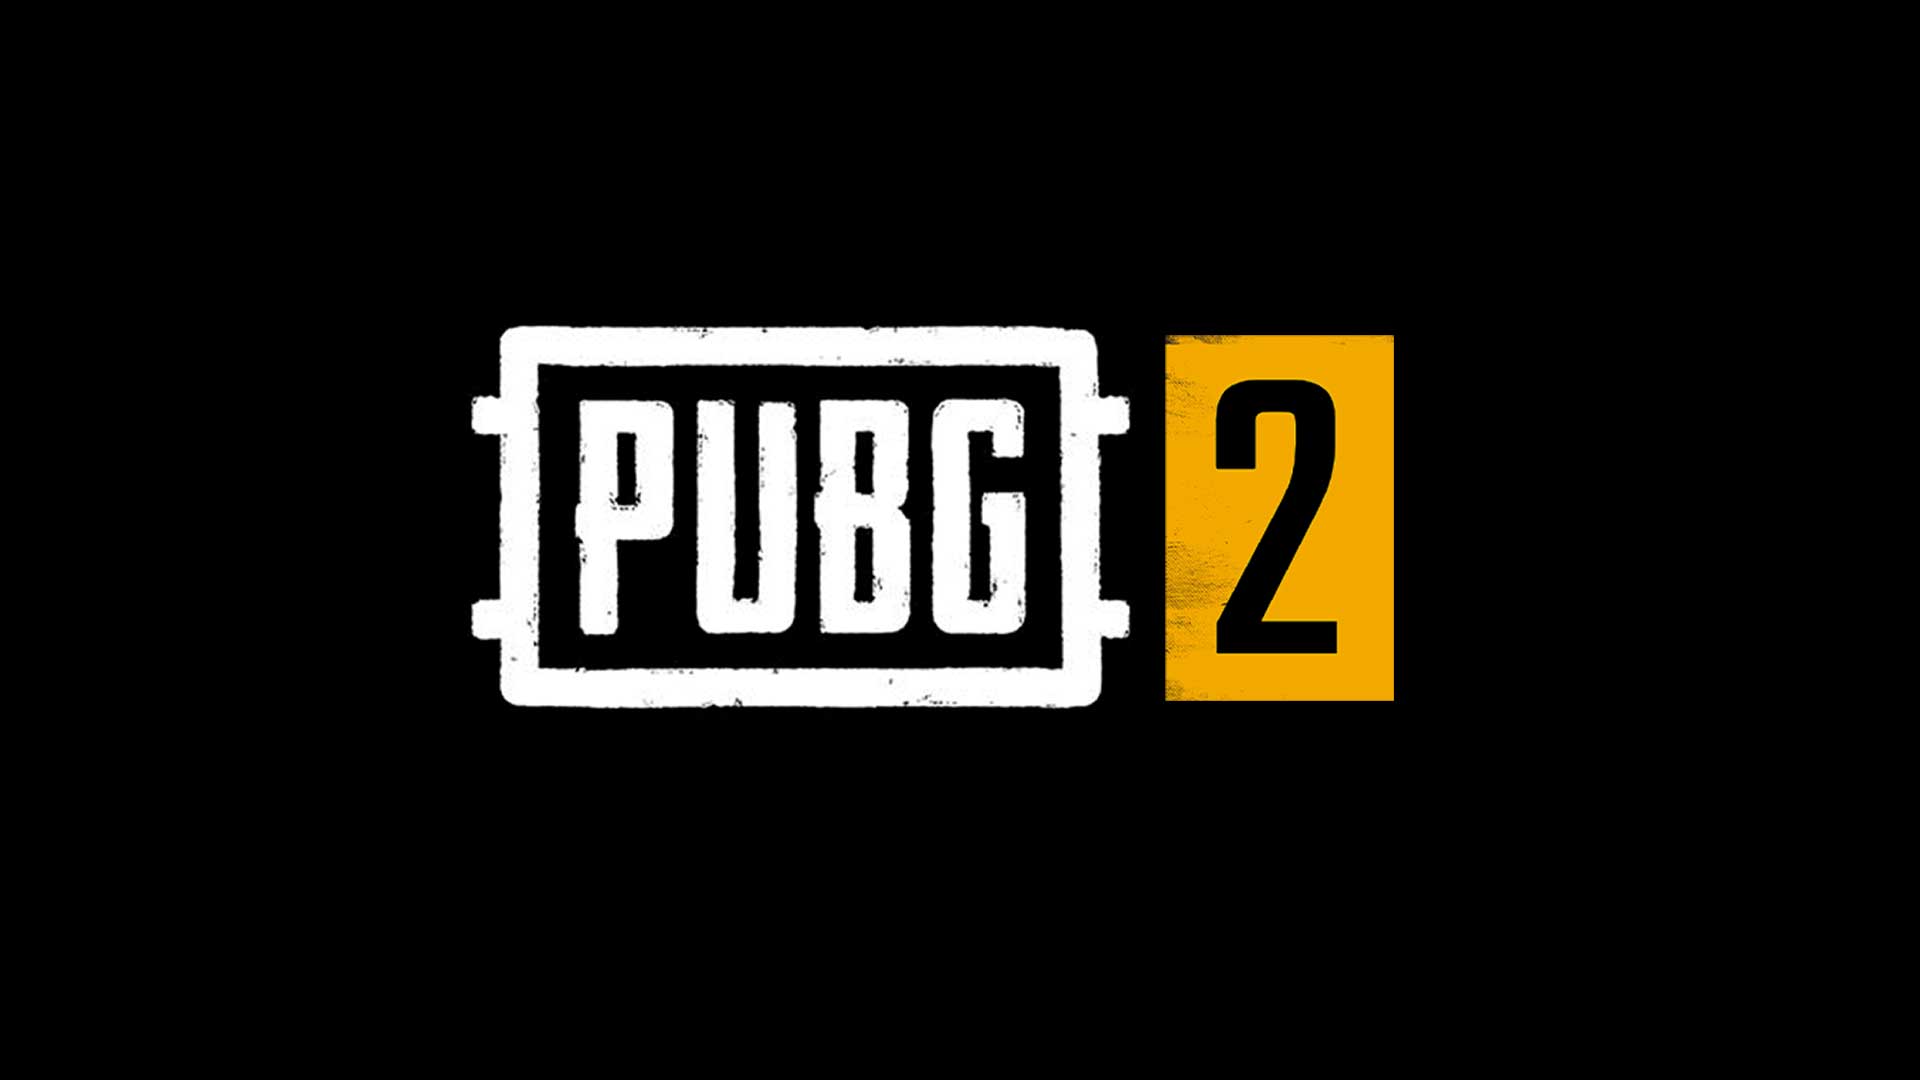 pubg2 leak